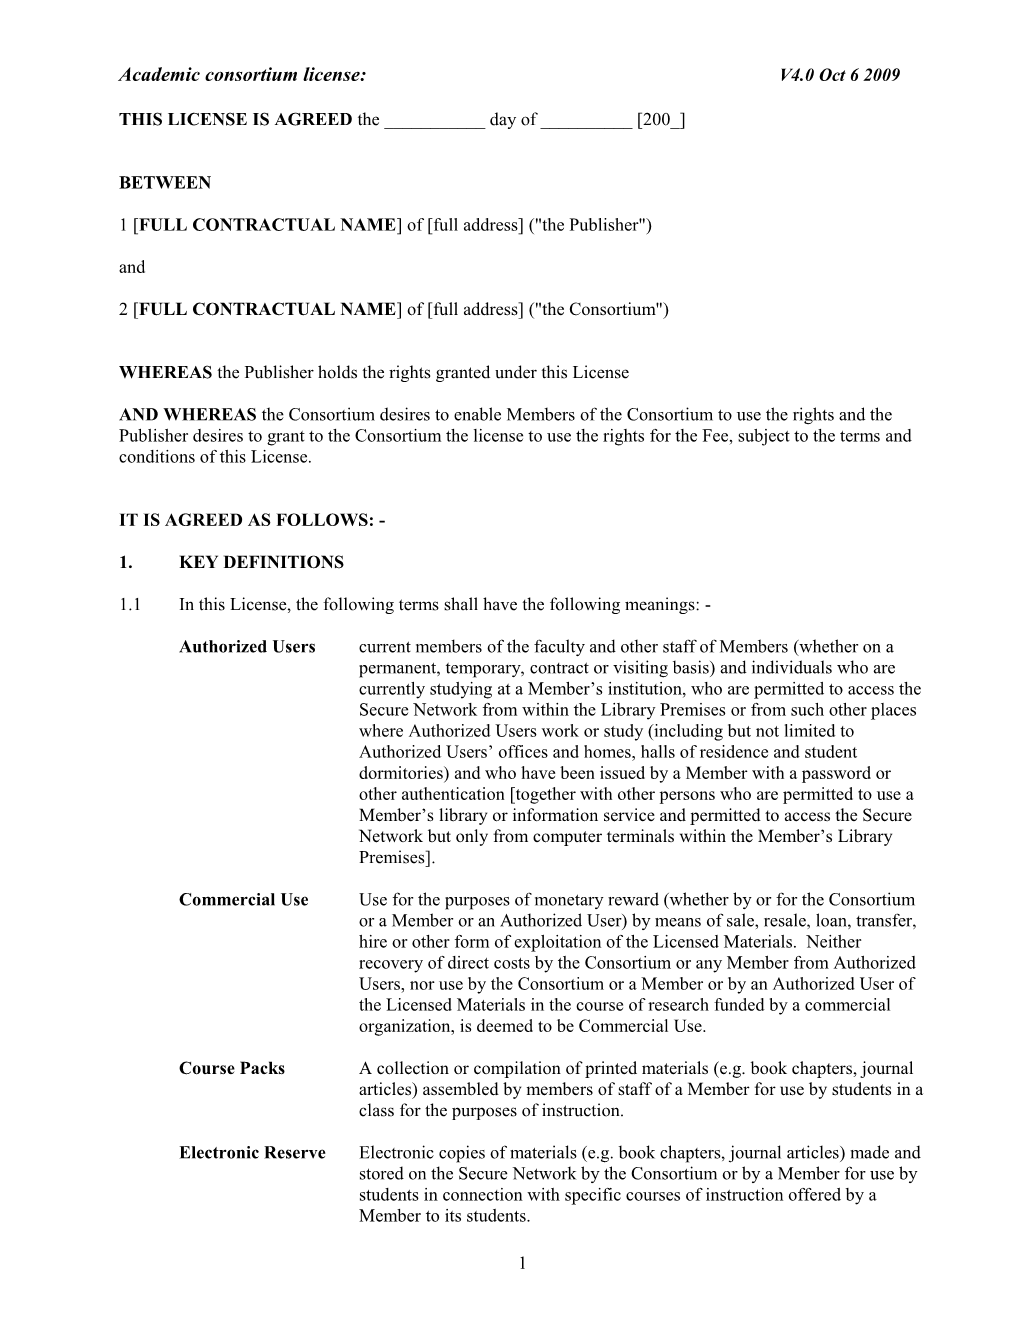 Academic Consortium License: V4.0 Oct 6 2009